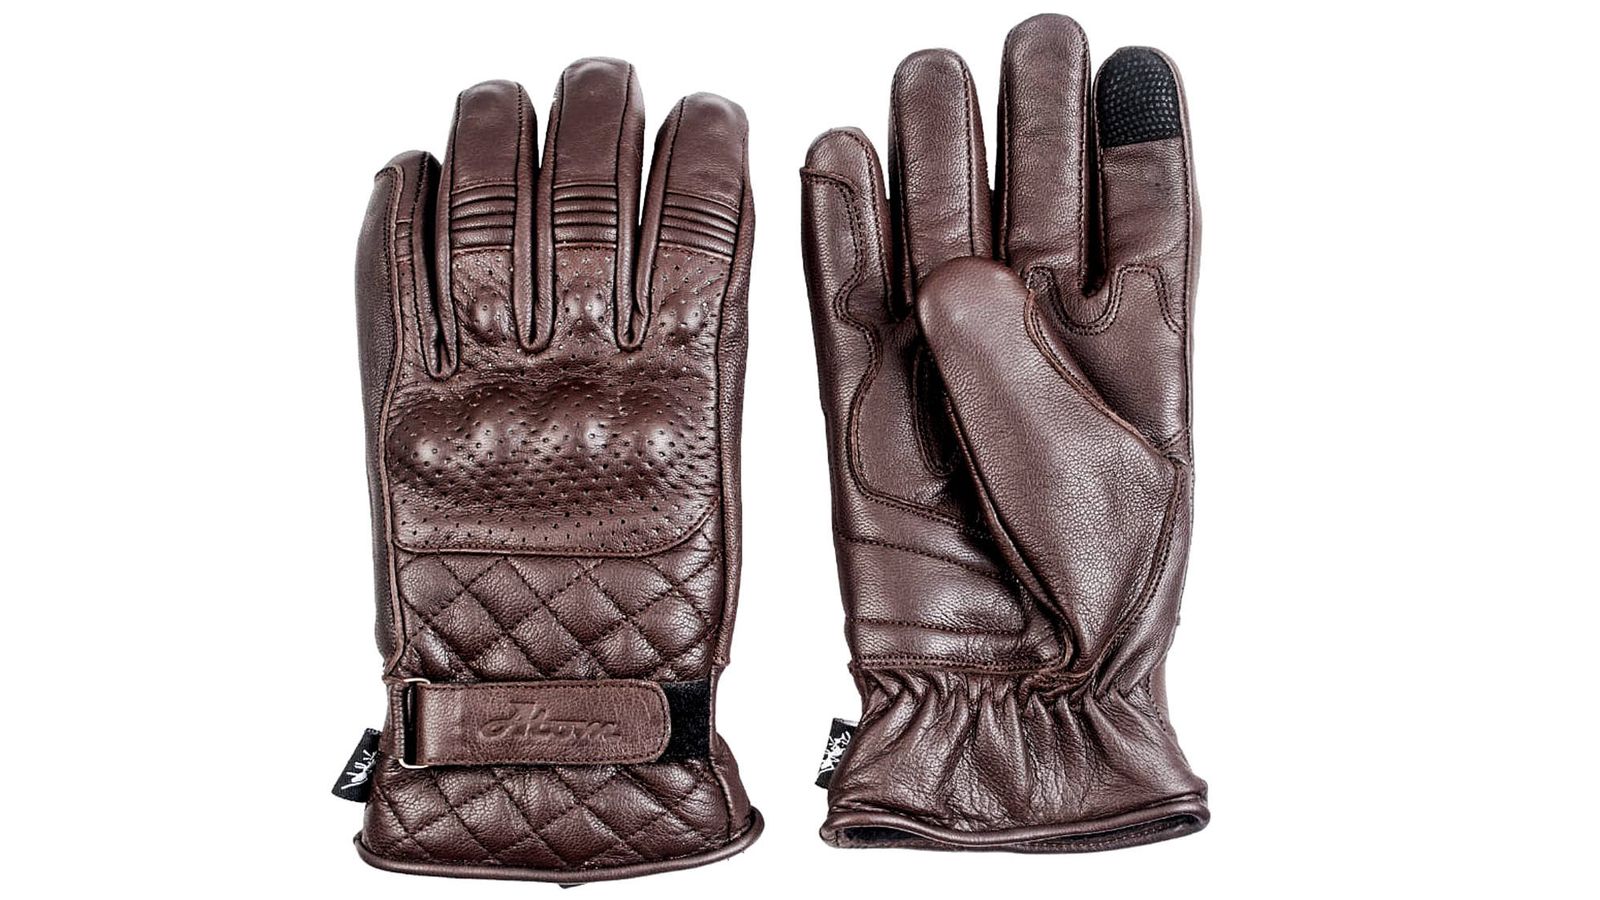 ATOM presenta sus nuevos guantes de invierno Dynamo